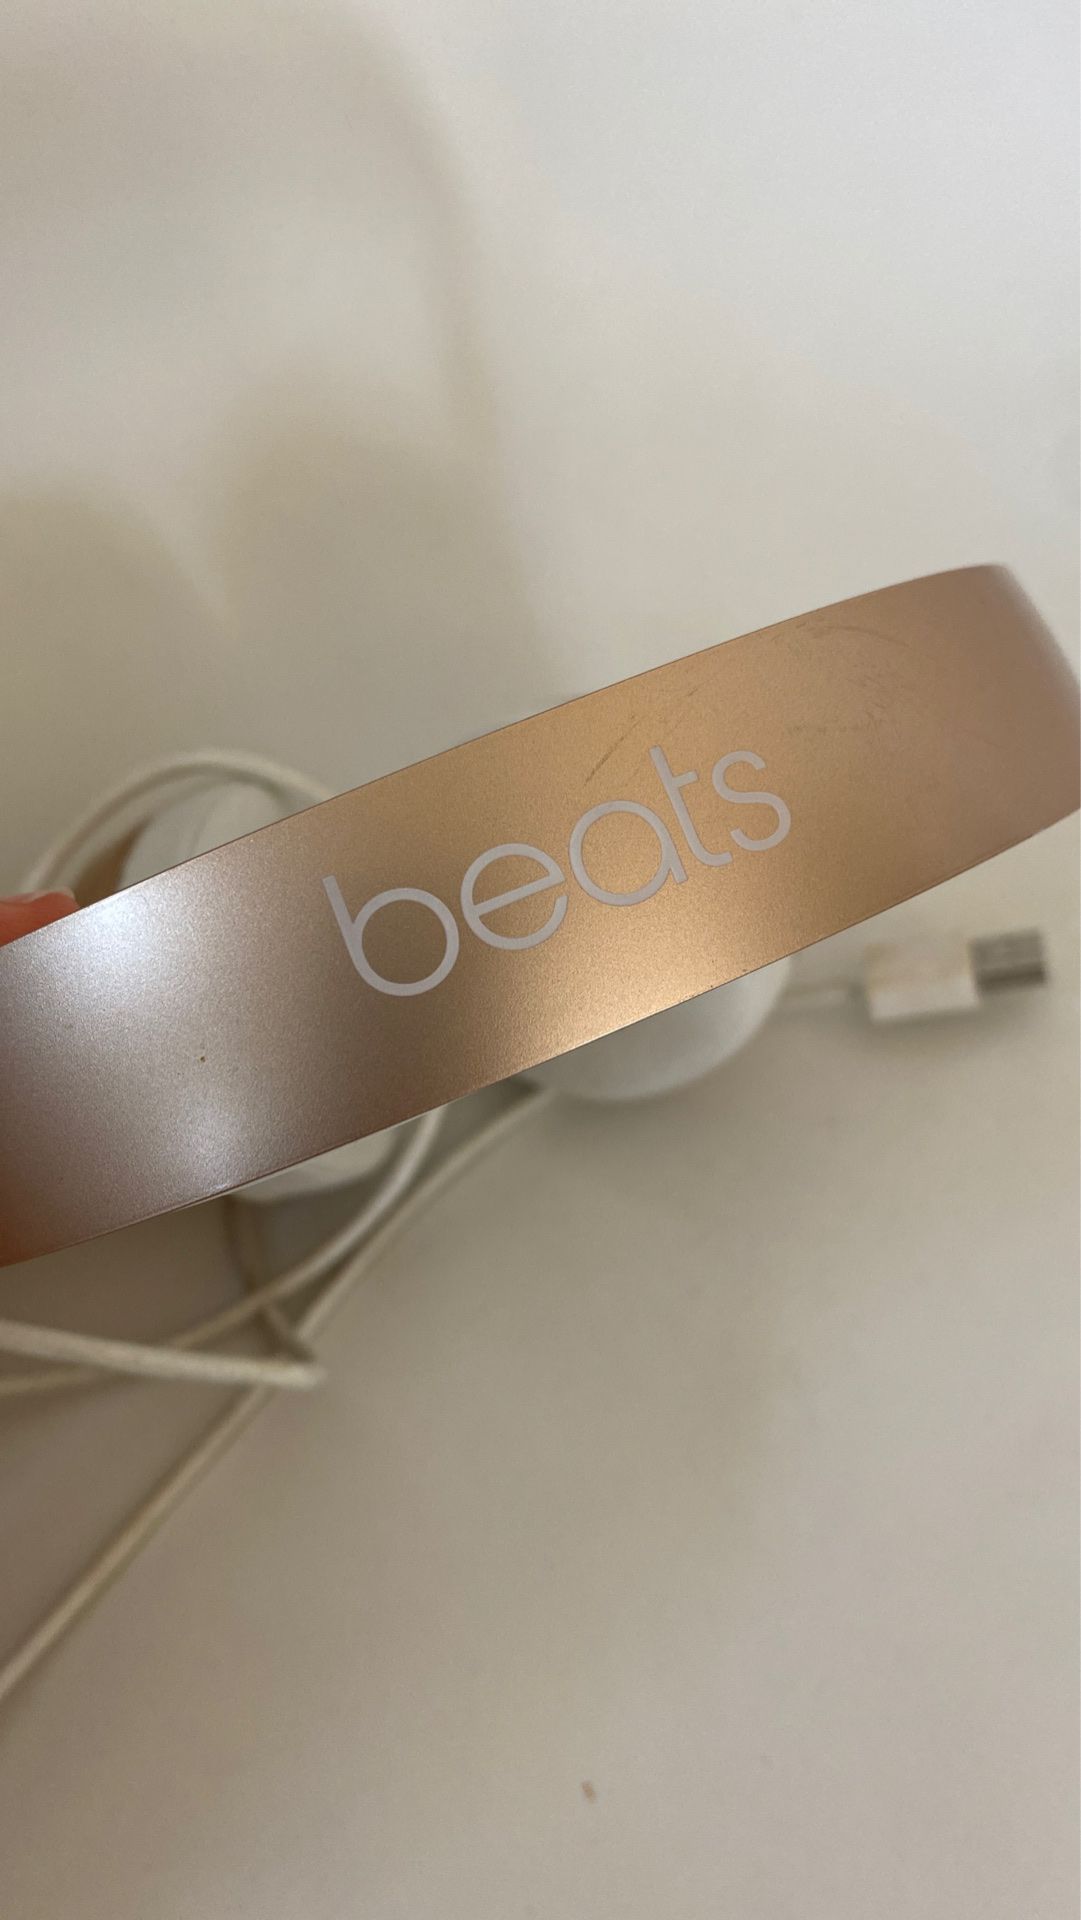 Beats headphones 🎧 $45